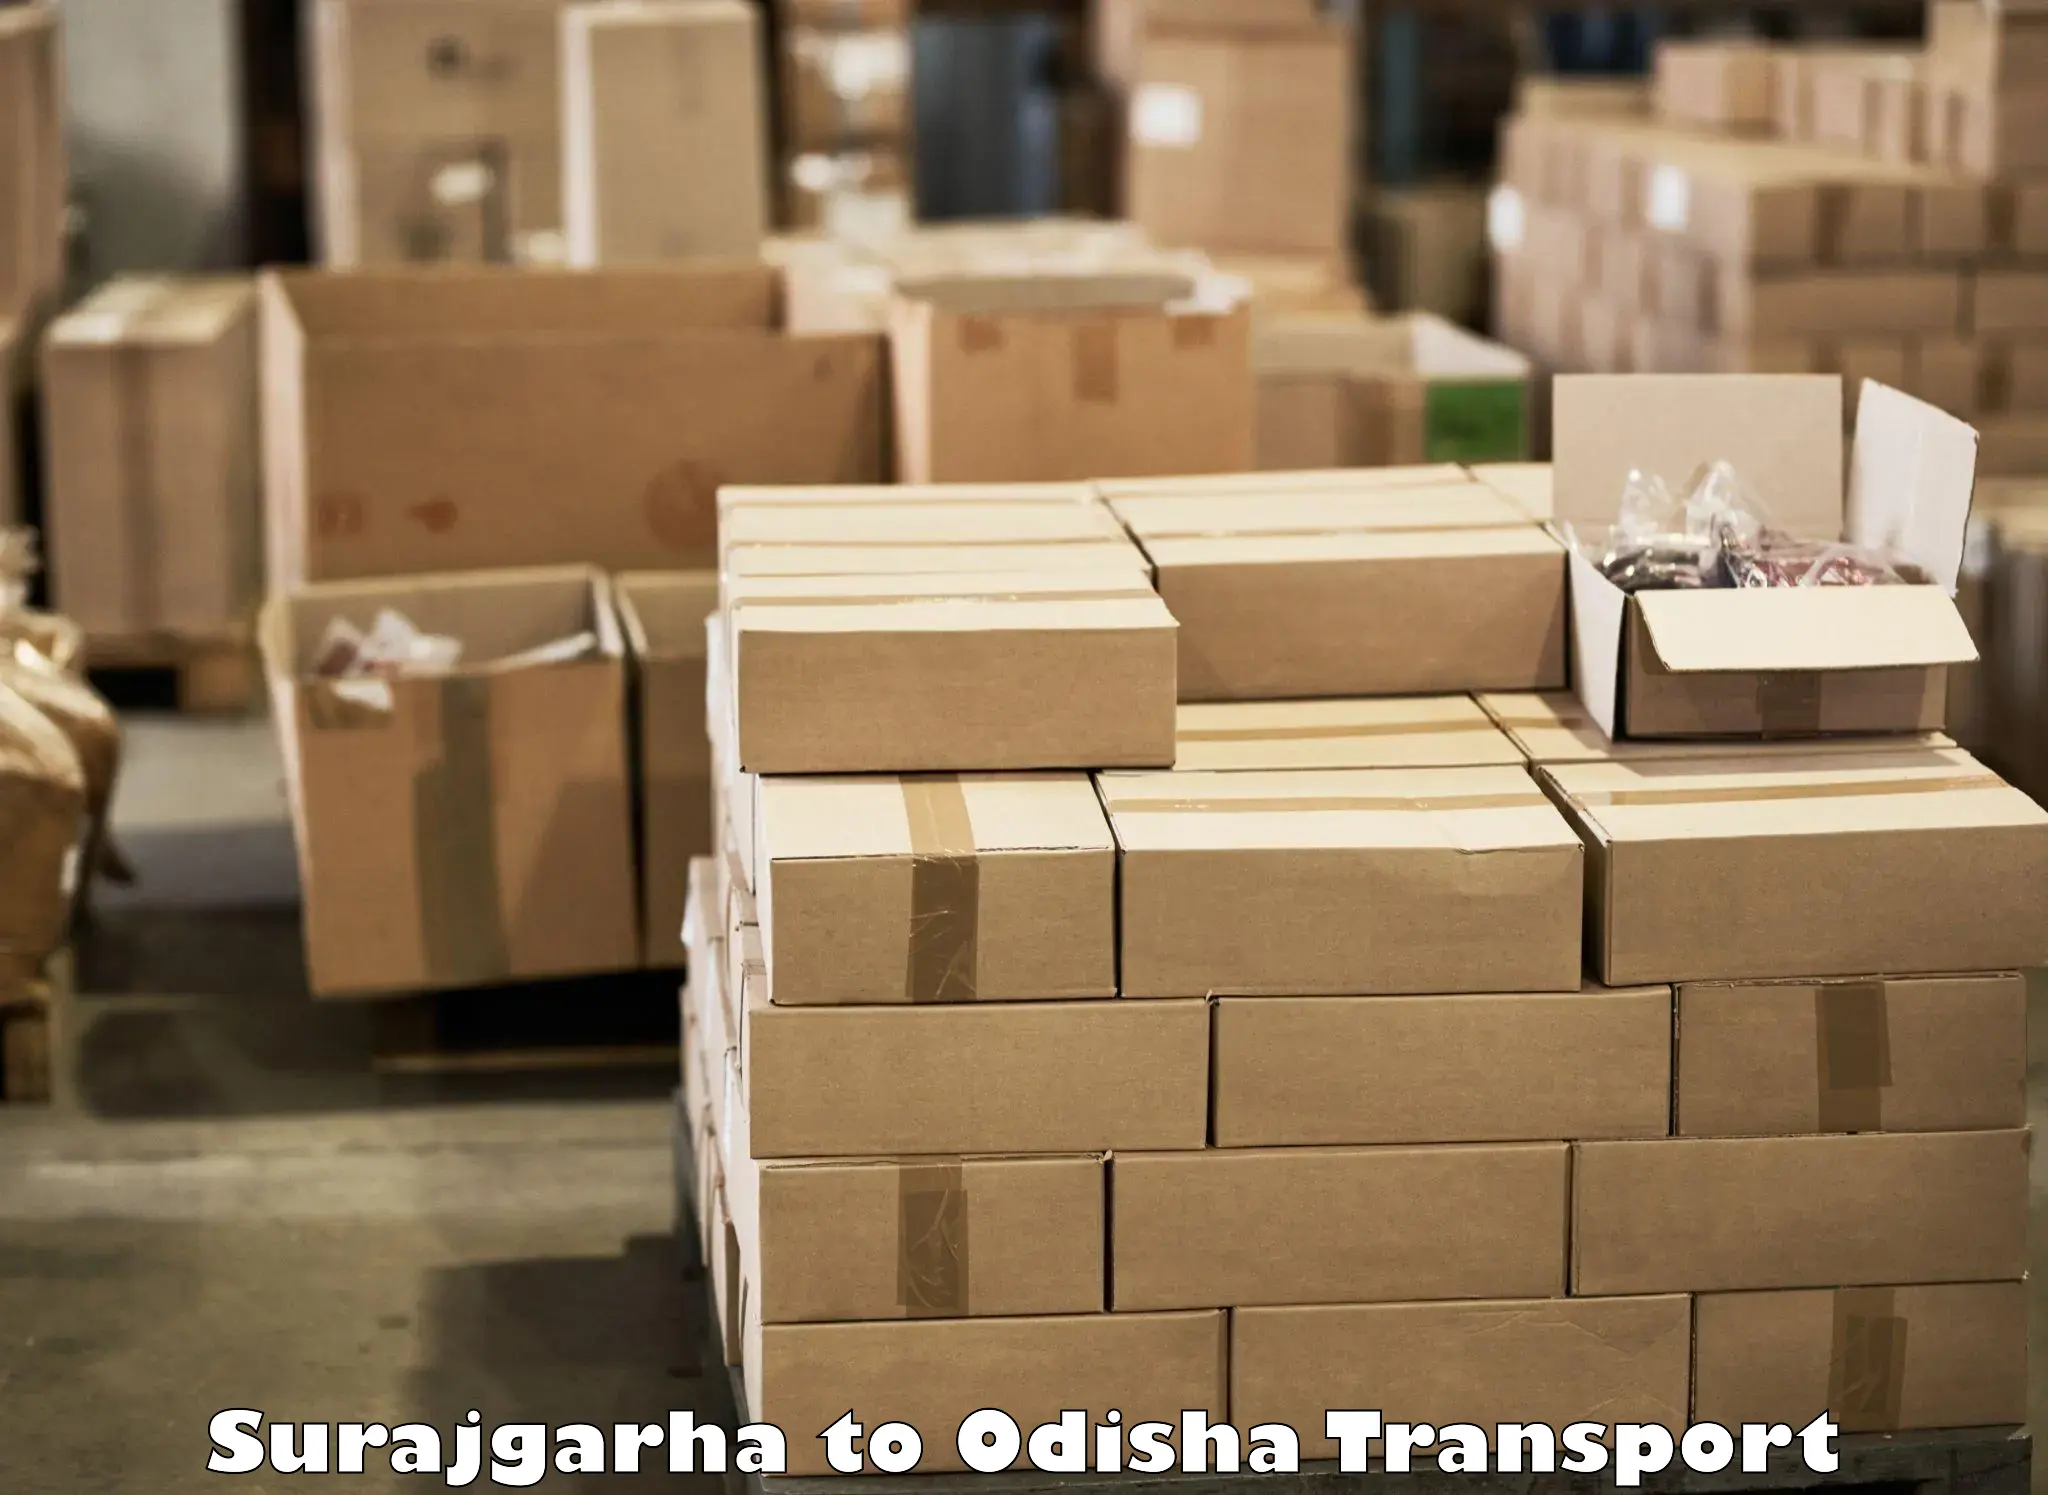 Cargo train transport services in Surajgarha to Sonepur